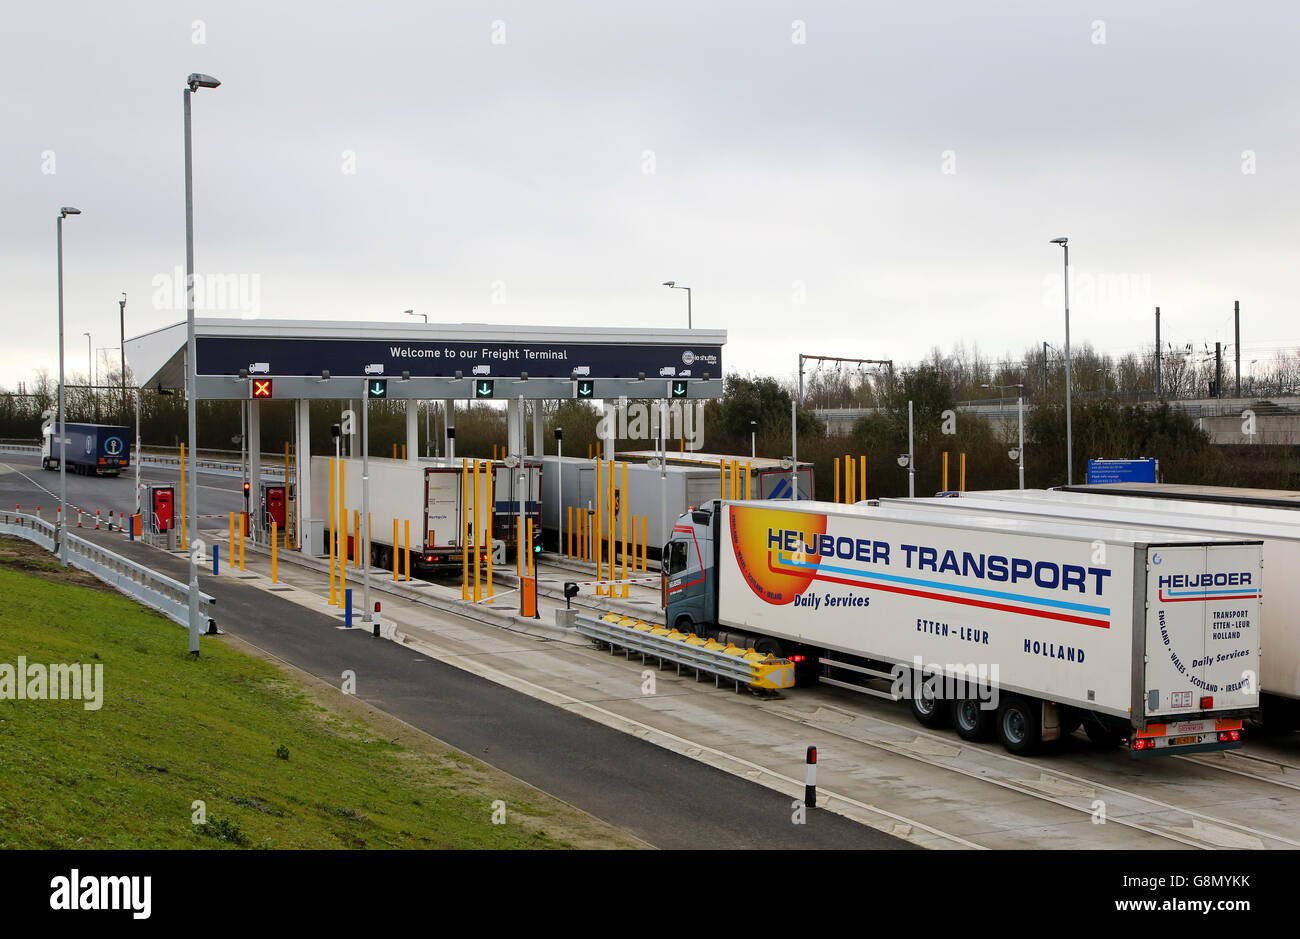 Gli autocarri arrivano a Eurotunnel a Folkestone, Kent, durante l'inaugurazione dell'espansione del terminal merci all'interno del sito. Foto Stock